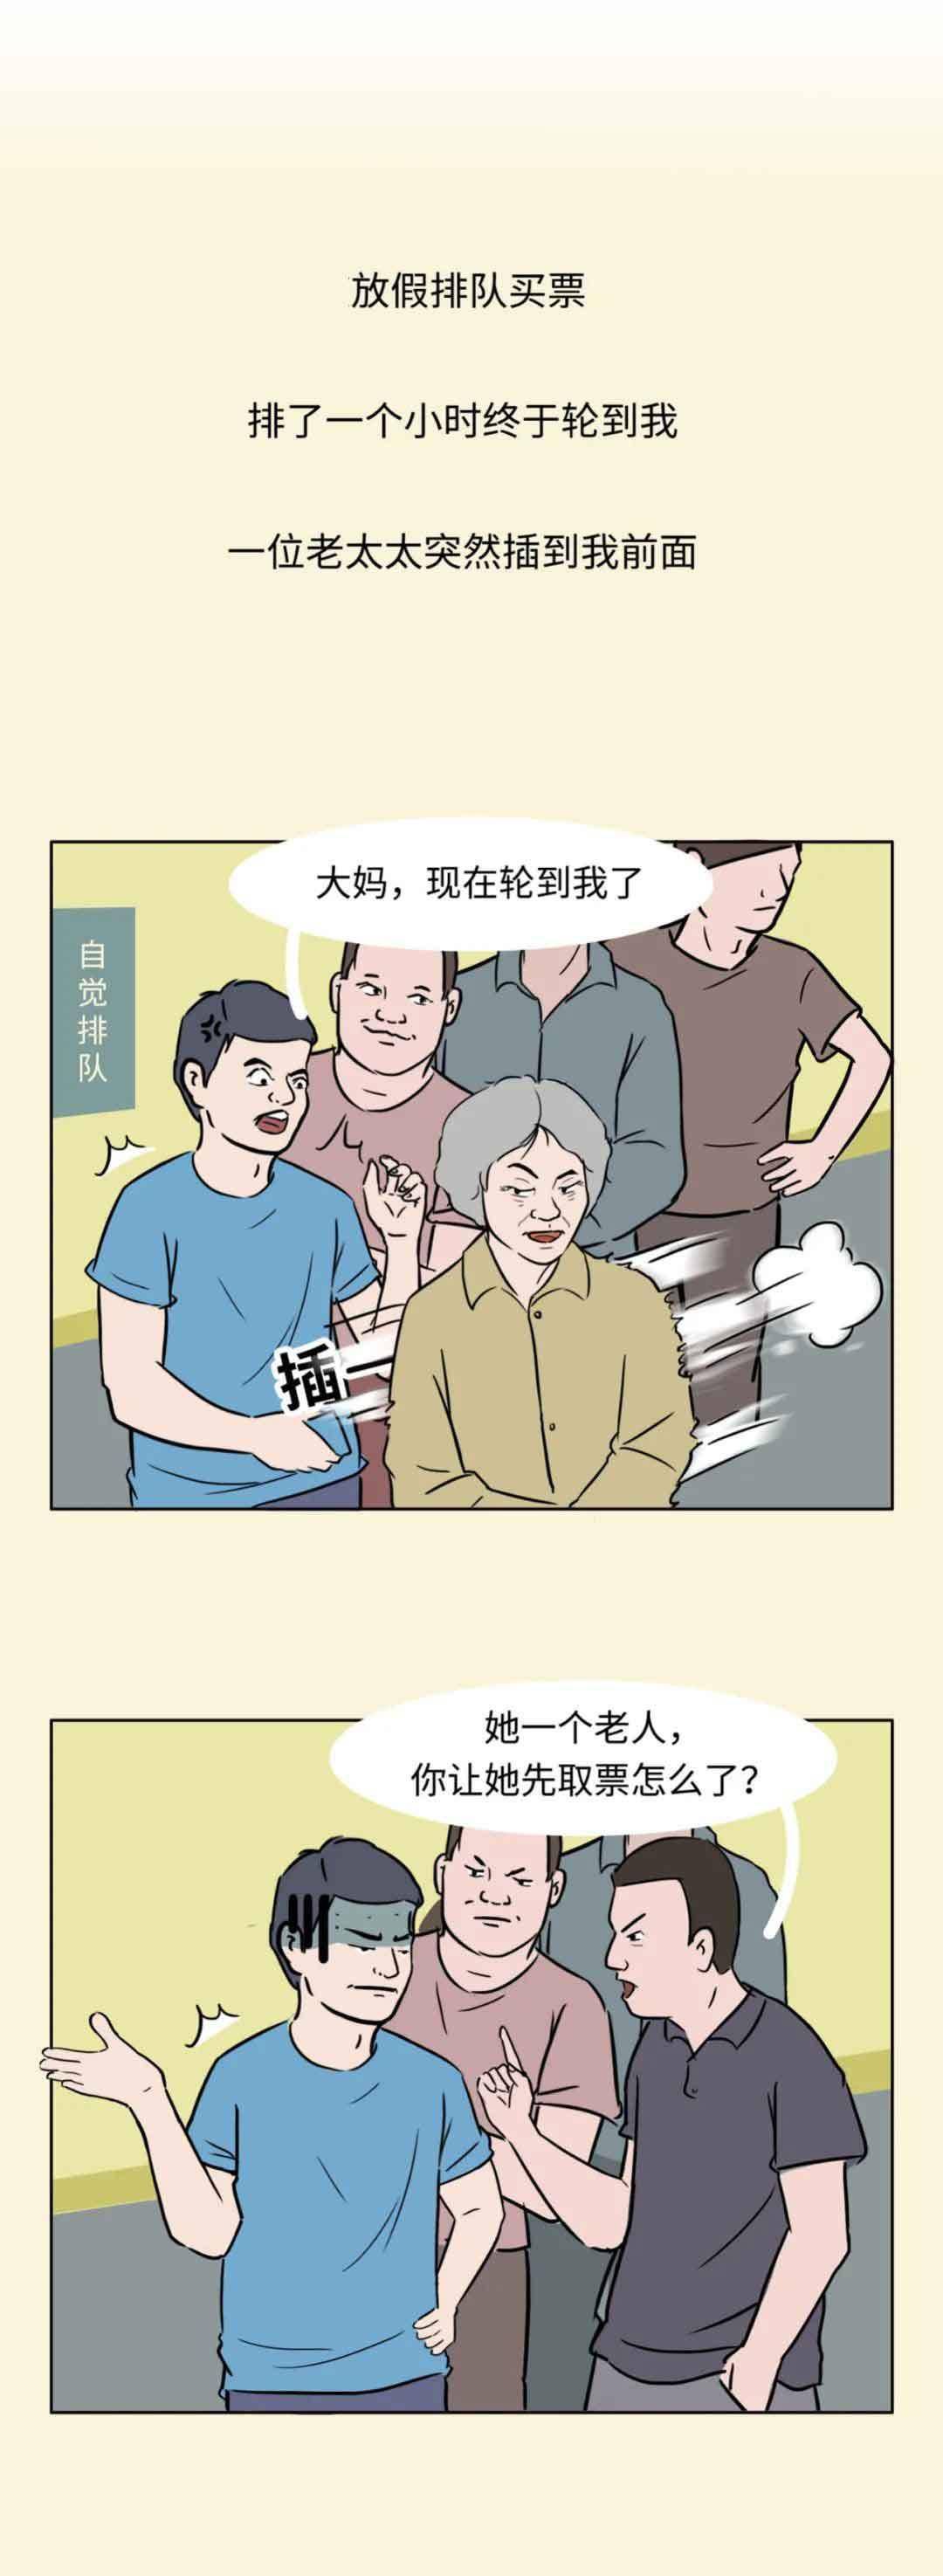 这些典型的中国式道德绑架你最不能忍哪个漫画